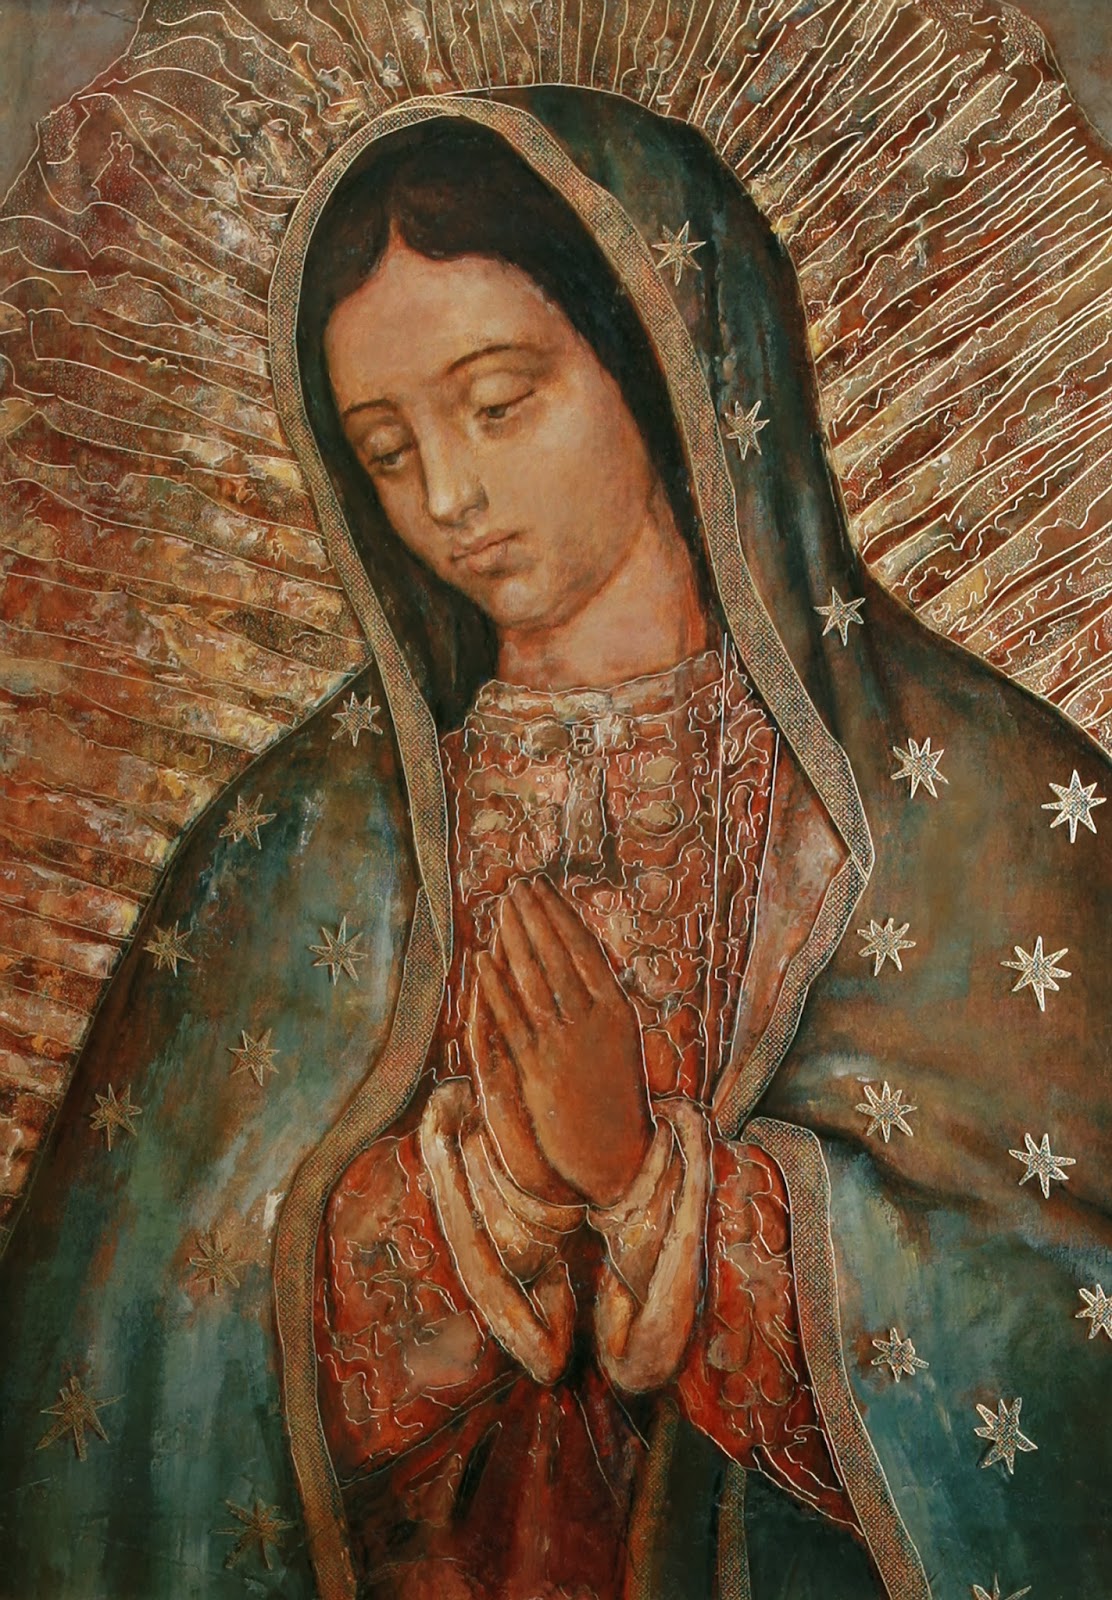 Cuadro De La Virgen De Guadalupe | Images and Photos finder